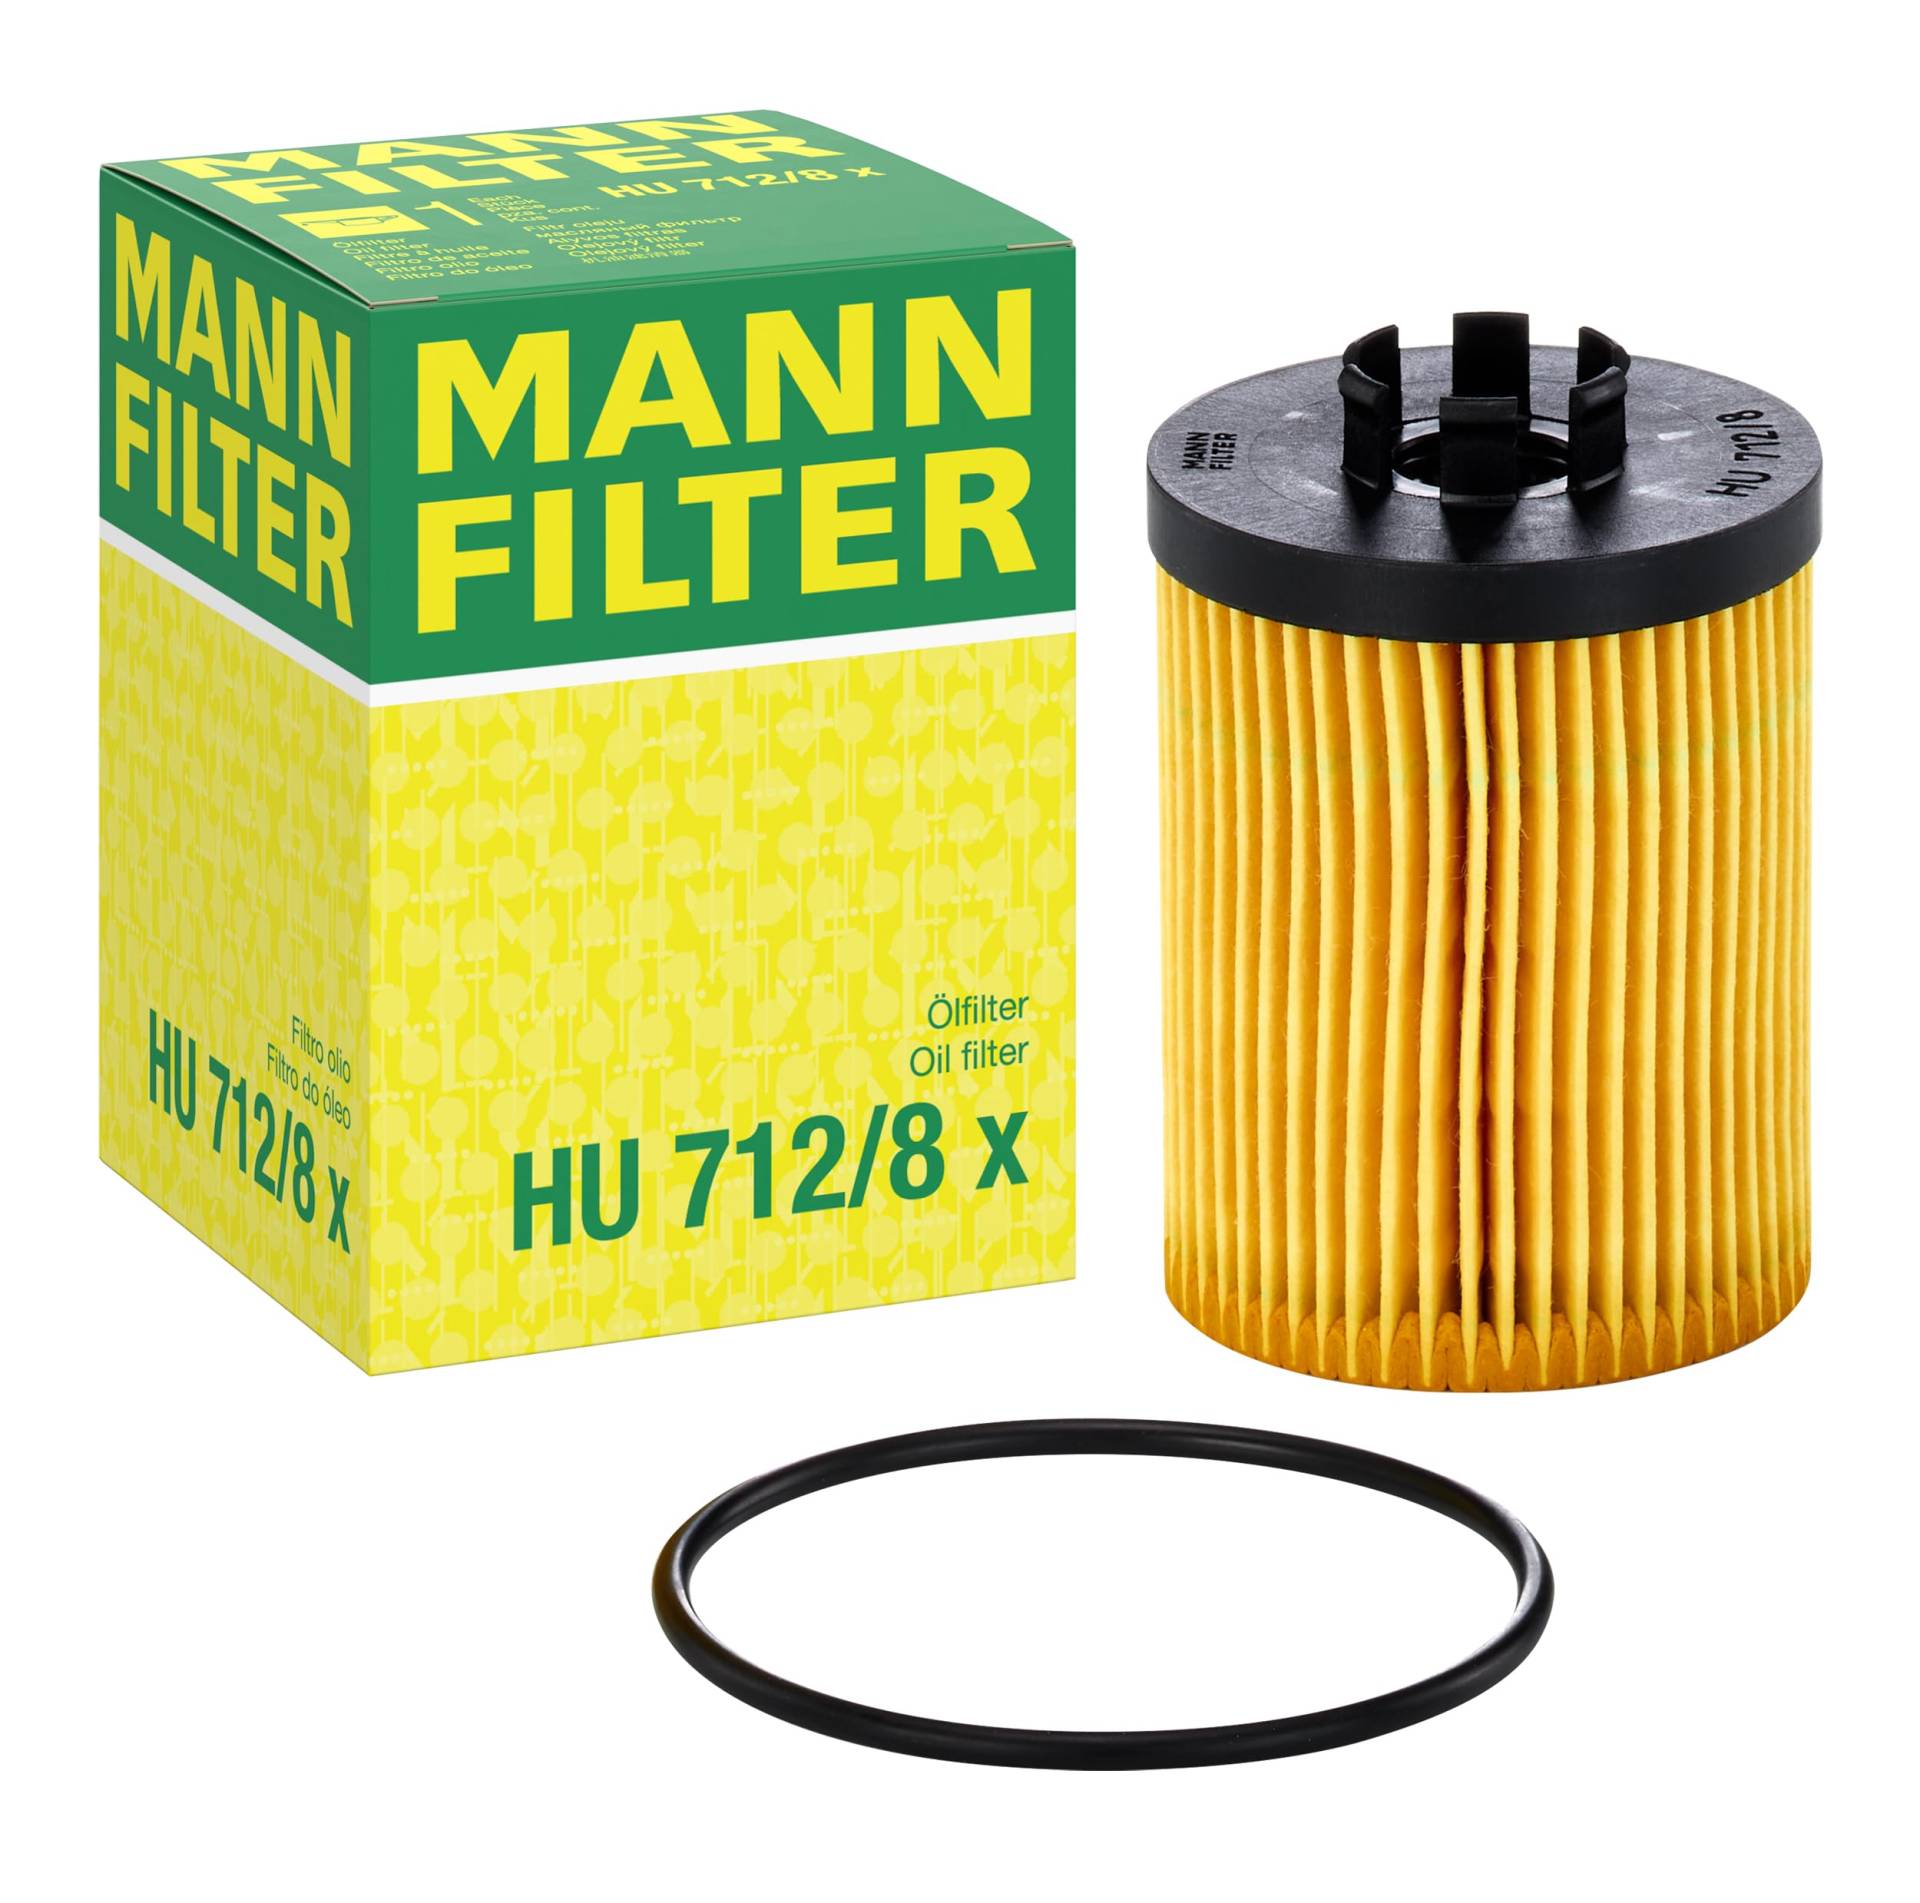 MANN-FILTER HU 712/8 X Ölfilter – Ölfilter Satz mit Dichtung / Dichtungssatz – Für PKW von MANN-FILTER